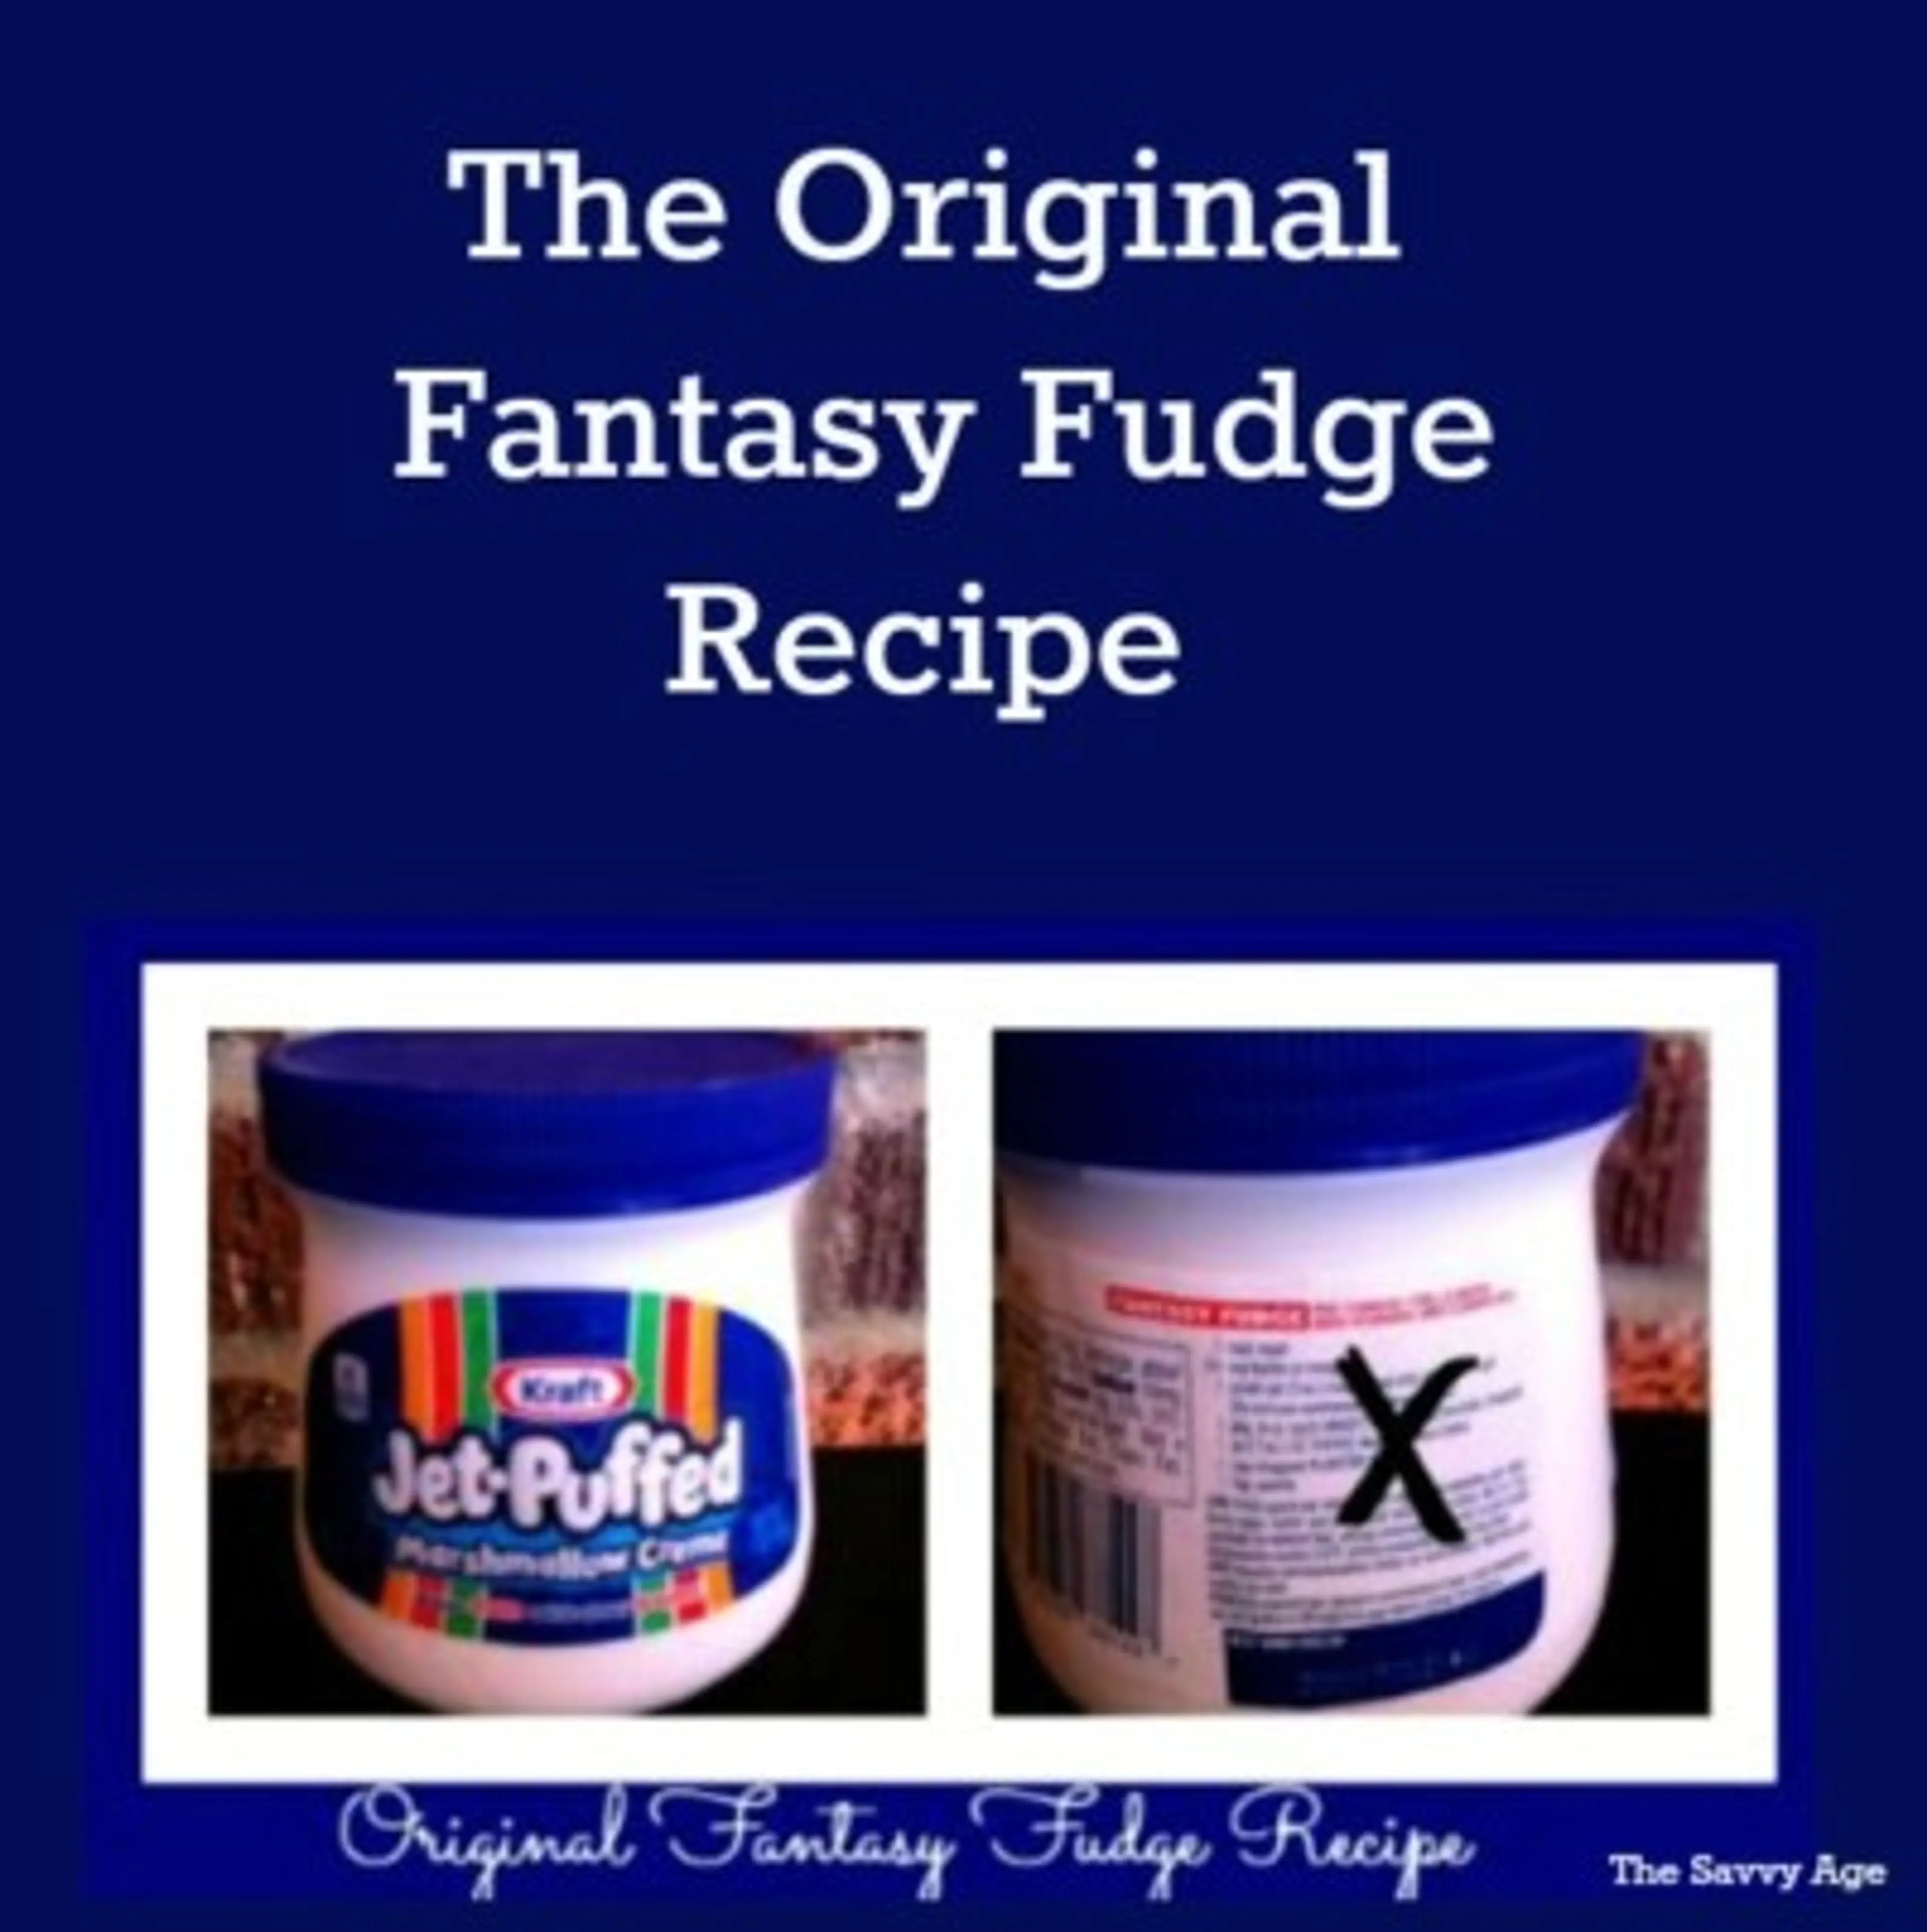 Original Fantasy Fudge Recipe (not the imposter!)